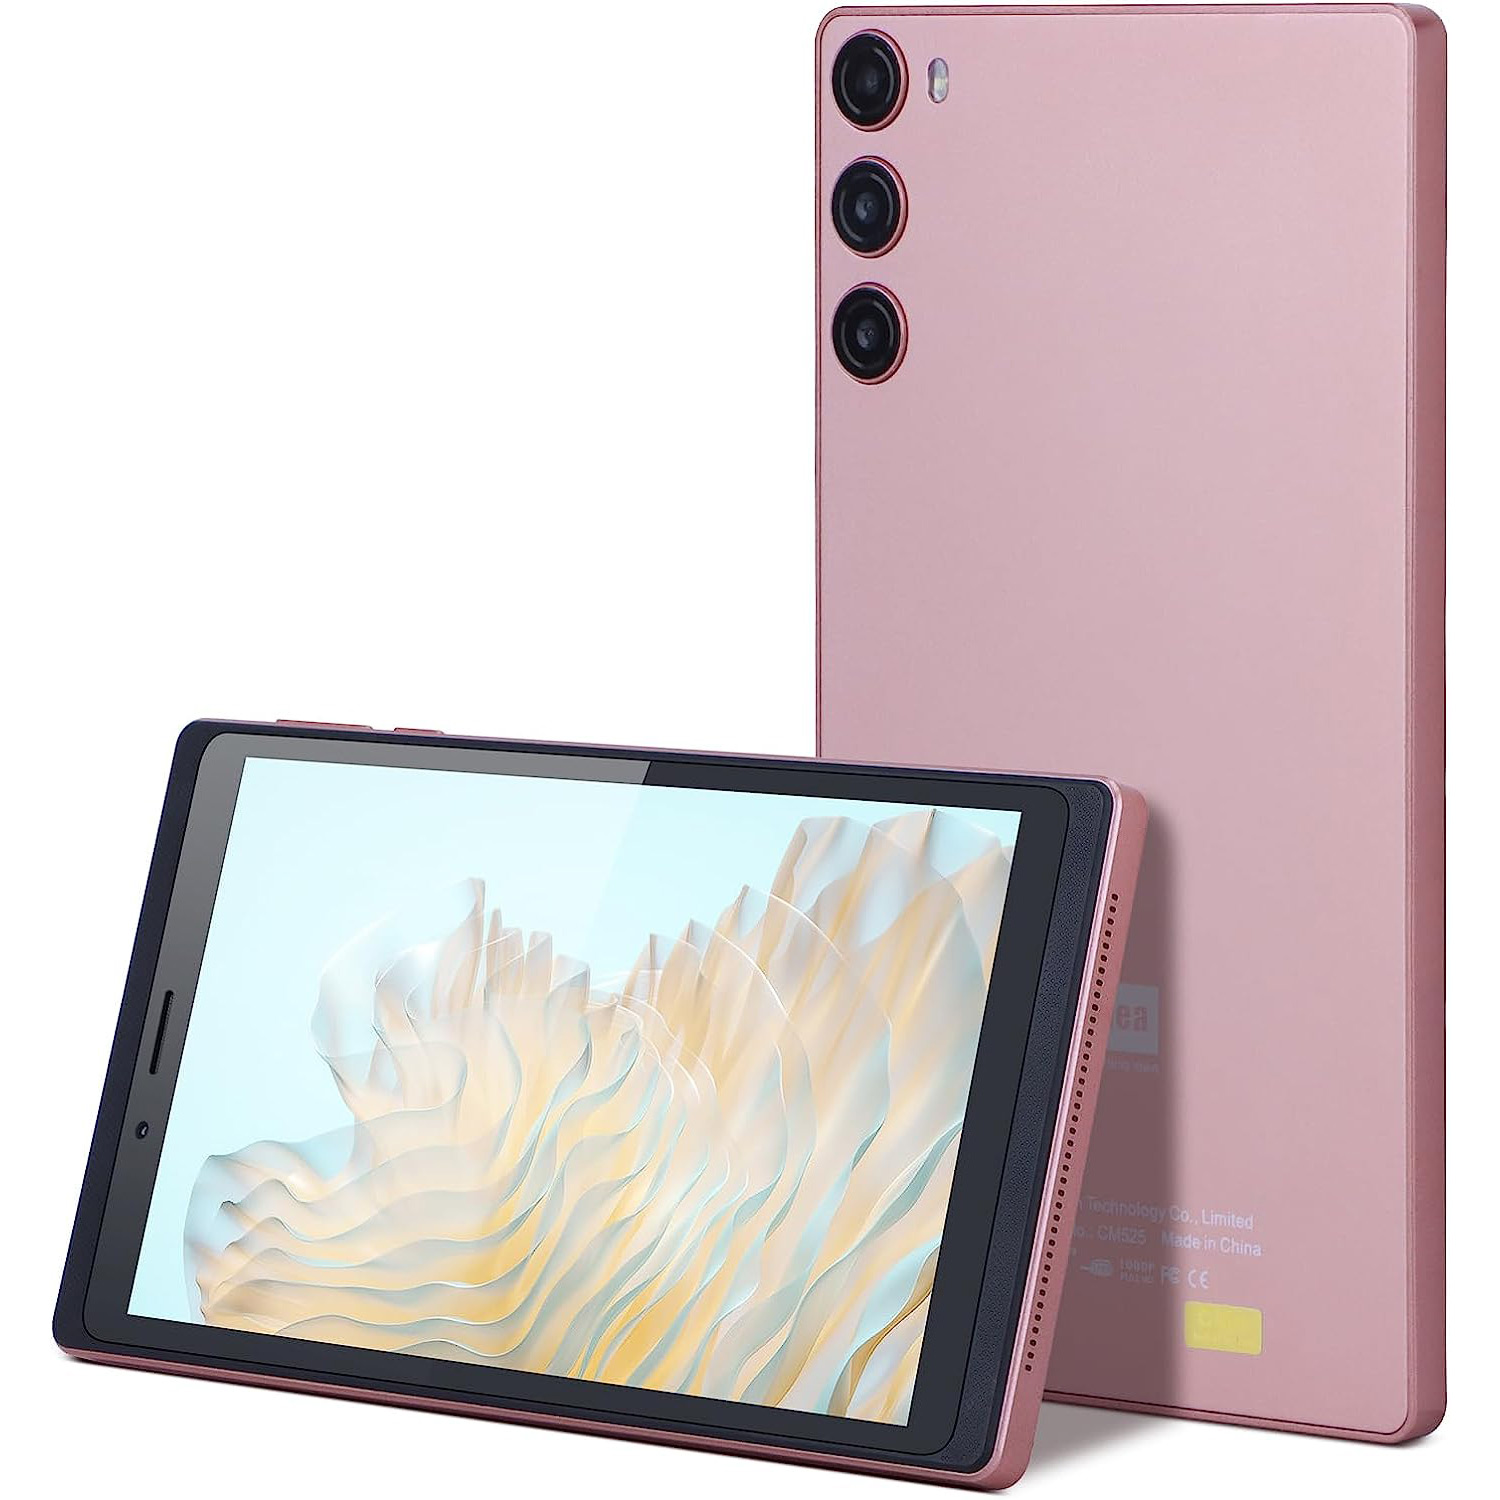 Discover Note 1 Smart Tablet – 4G Sim-Core 7 Pouces 16GB – Wi-Fi - BOUTIQUE  EN LIGNE